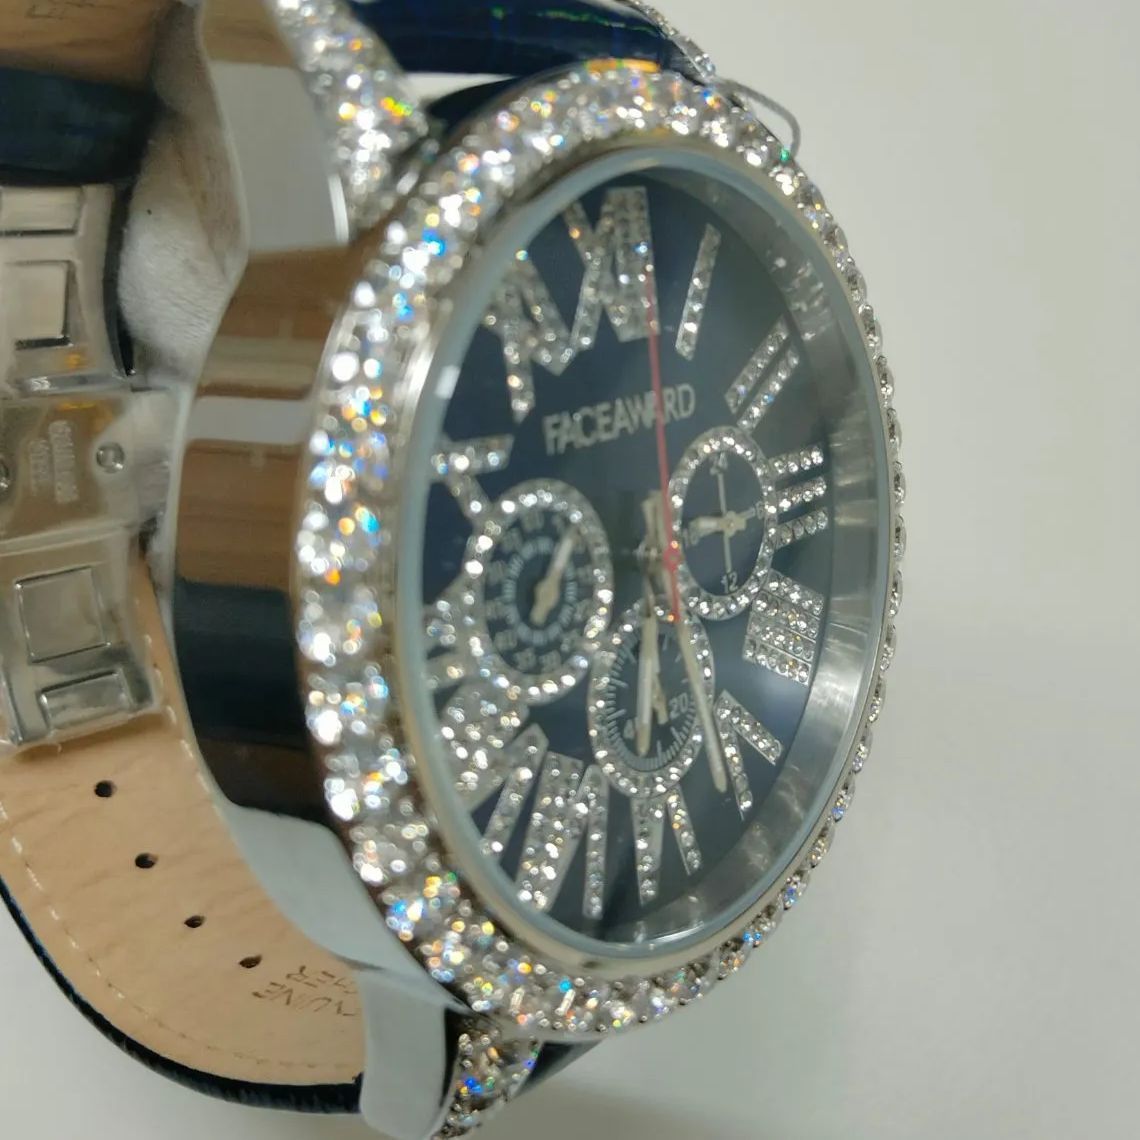 新品未使用】FACEAWARD フェイスアワード DIAZ クオーツ メンズ腕時計 